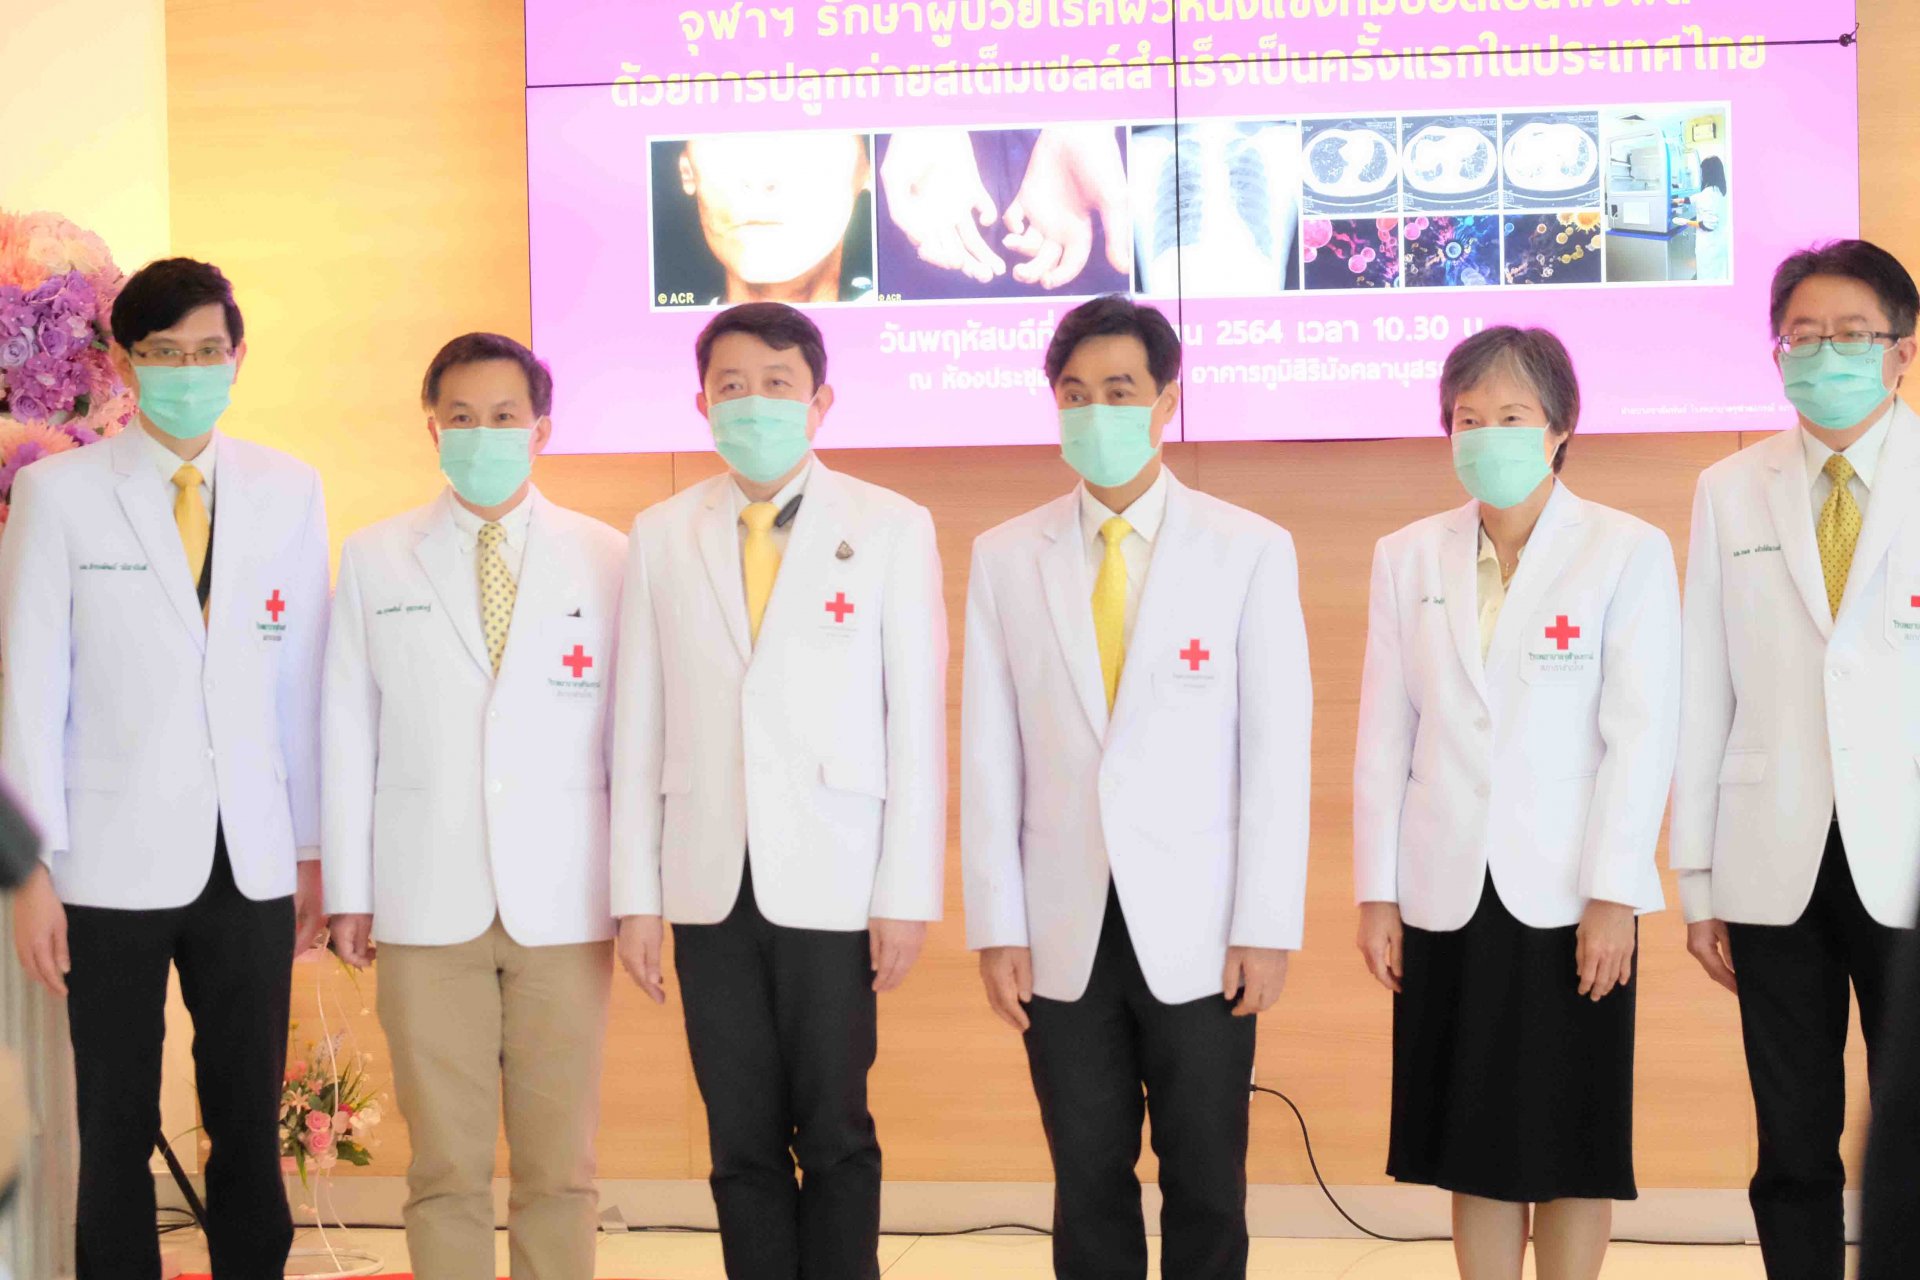 จุฬาฯ รักษาผู้ป่วยโรคผิวหนังแข็งที่มีปอดเป็นพังผืด ด้วยการปลูกถ่ายสเต็มเซลล์สำเร็จเป็นครั้งแรกในประเทศไทย